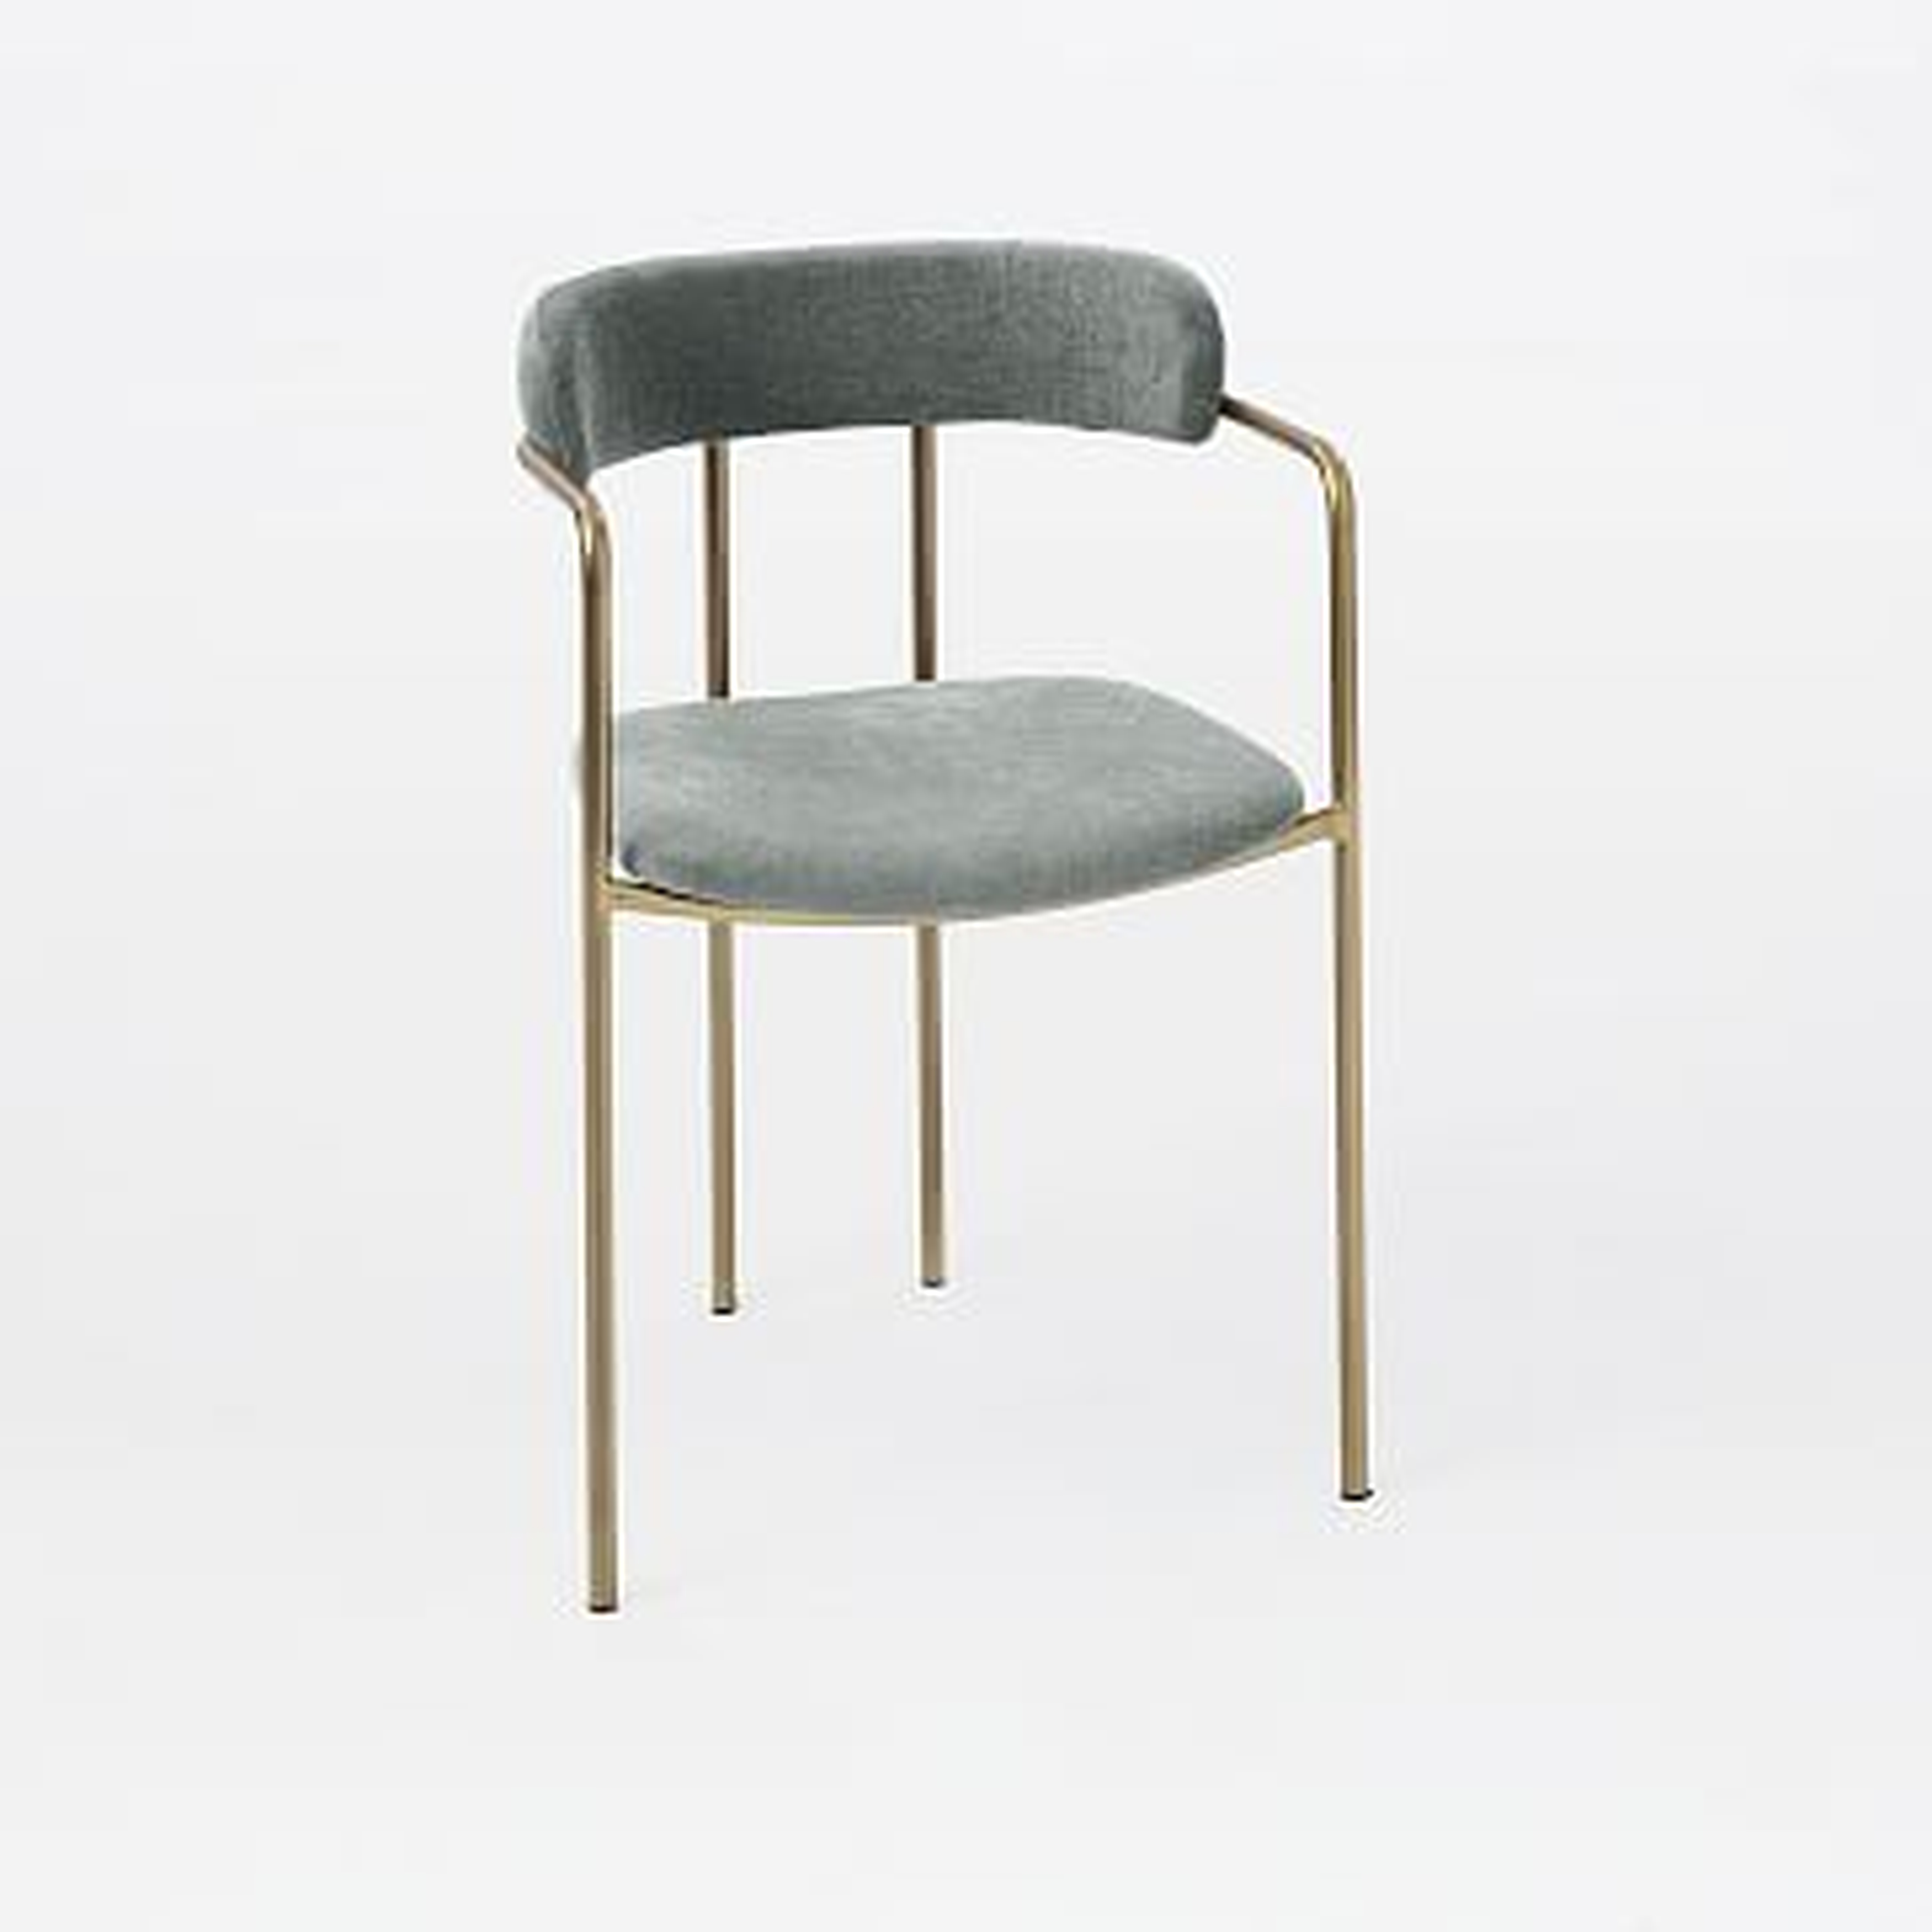 Lenox Upholstered Dining Chair, Distressed Velvet, Mineral Gray, Blackened Brass - West Elm